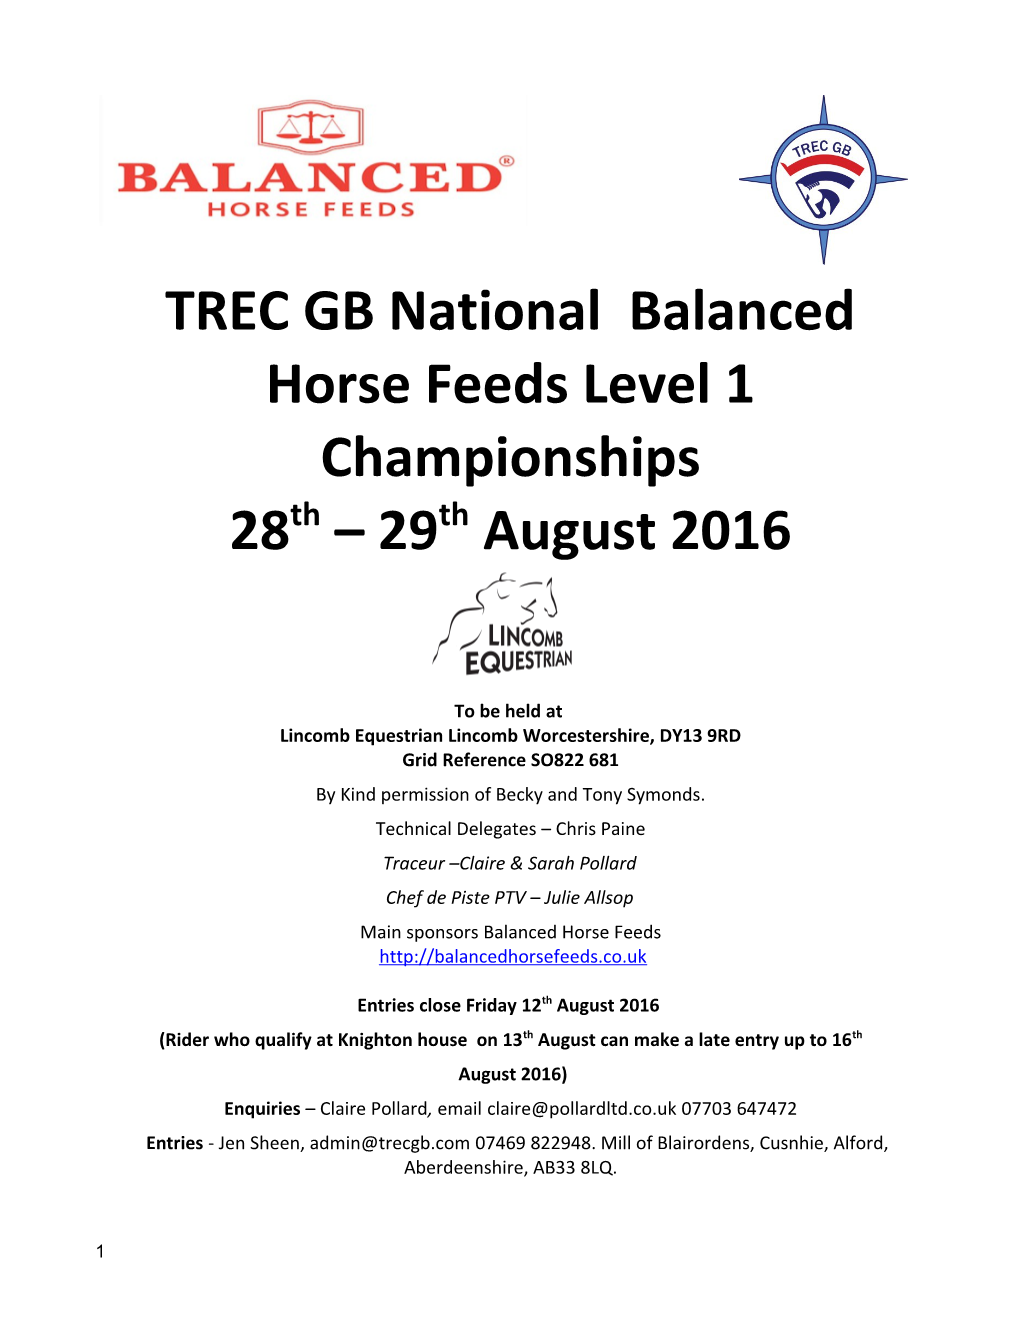 TREC GB National Balanced Horse Feeds Level 1 Championships